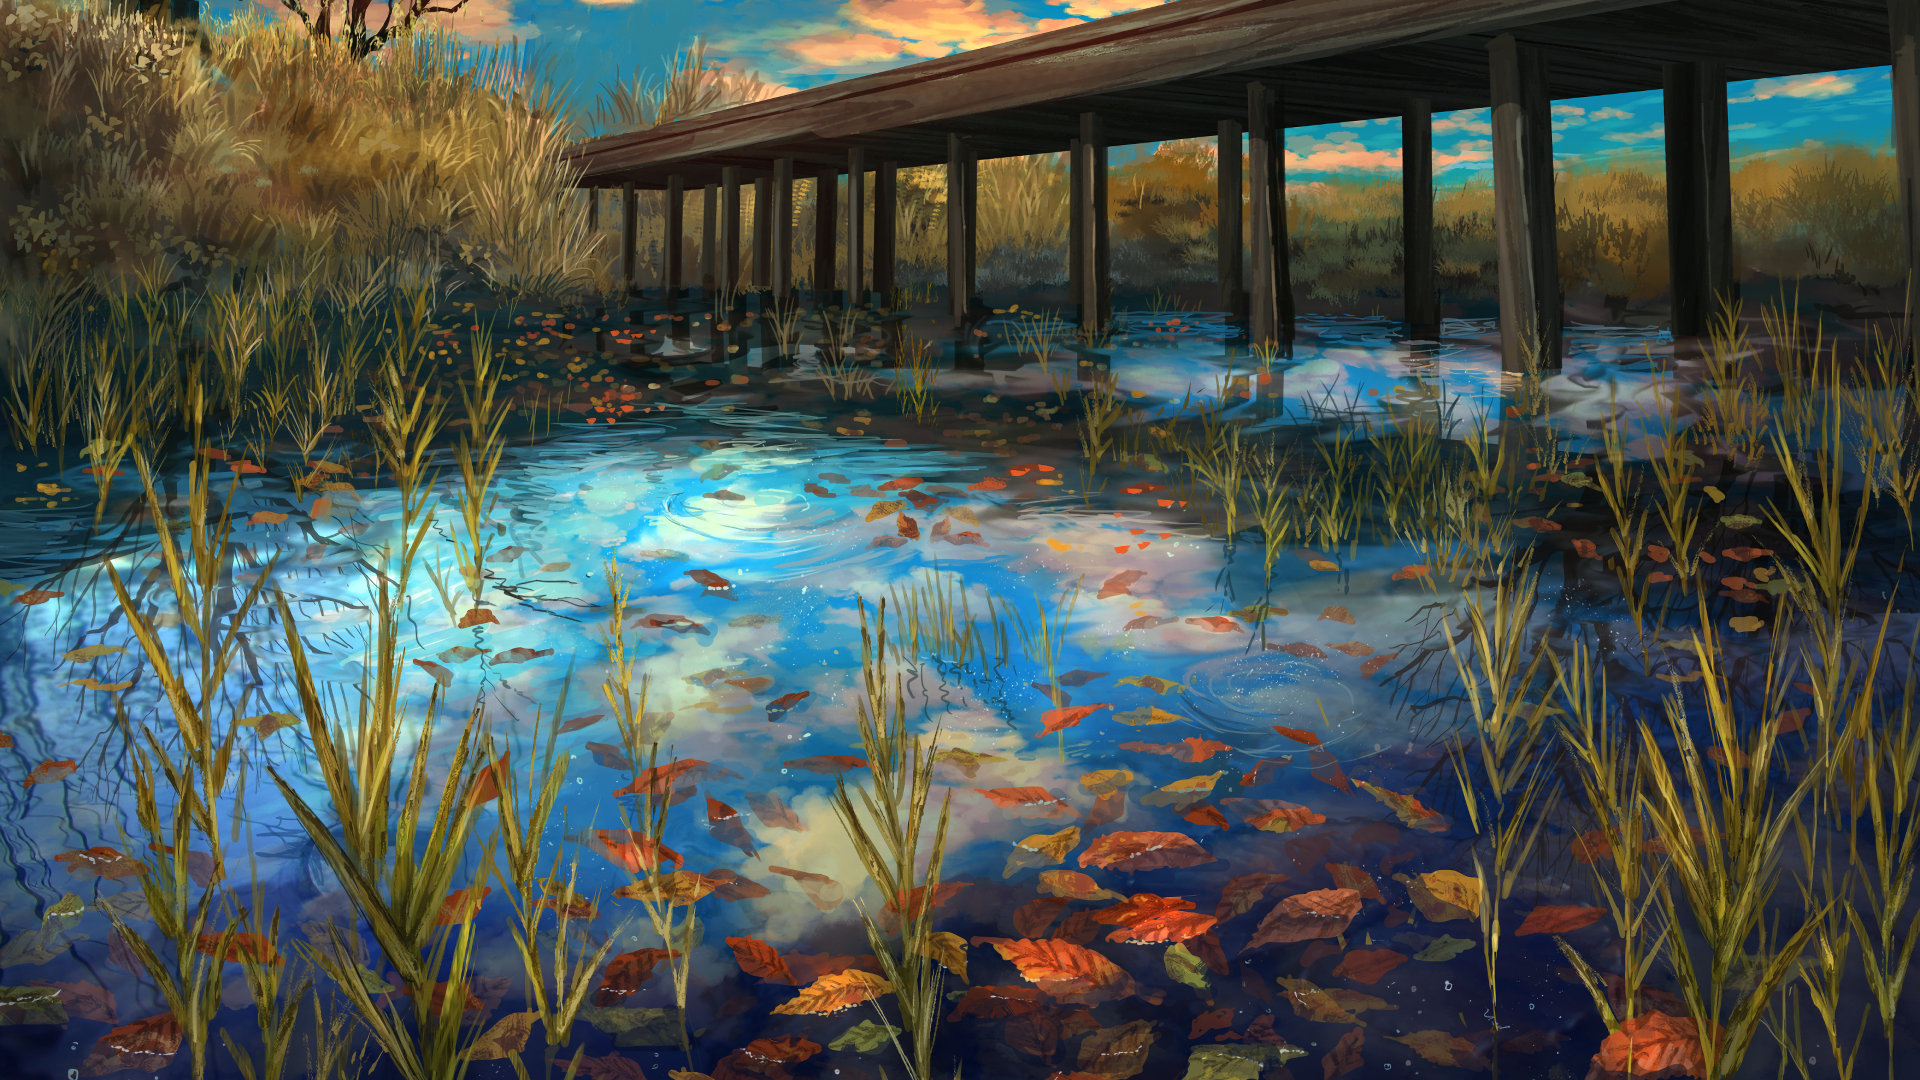 Download 1920x1080 Anime Landscape, River, Bridge, Autumn, Scenic